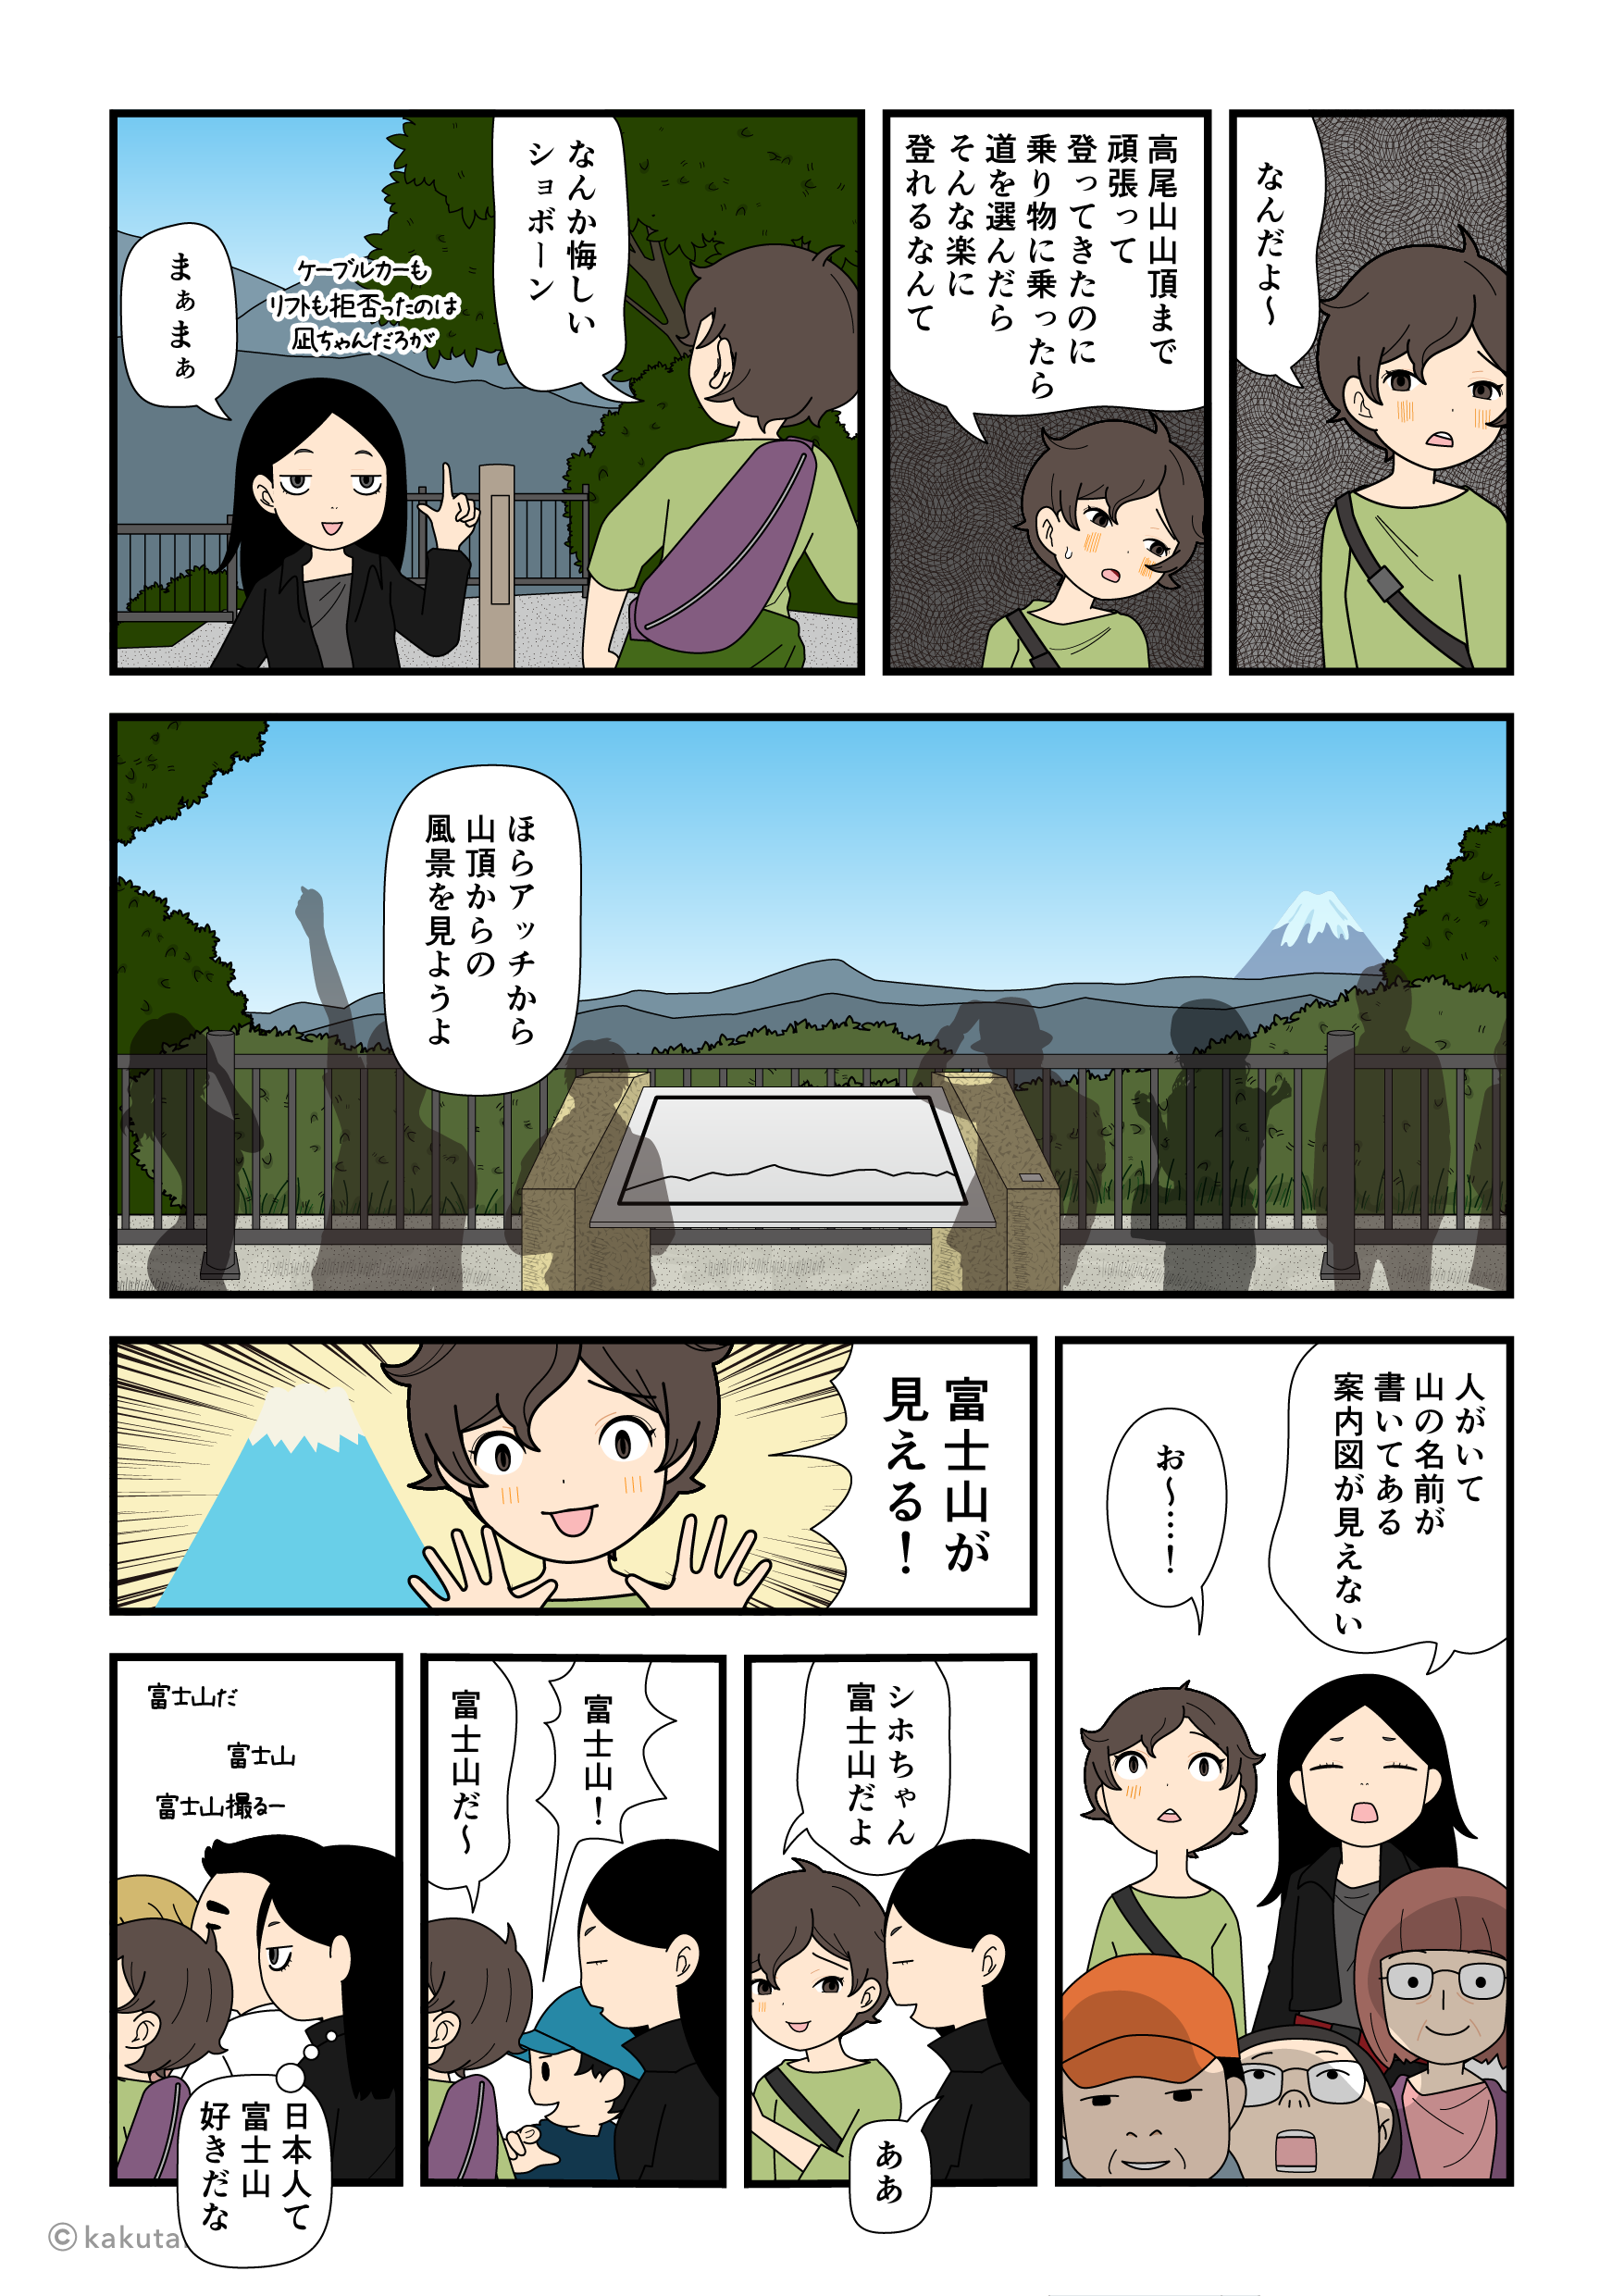 高尾山山頂に着いたことより富士山が見えたことに喜ぶ登山初心者の漫画